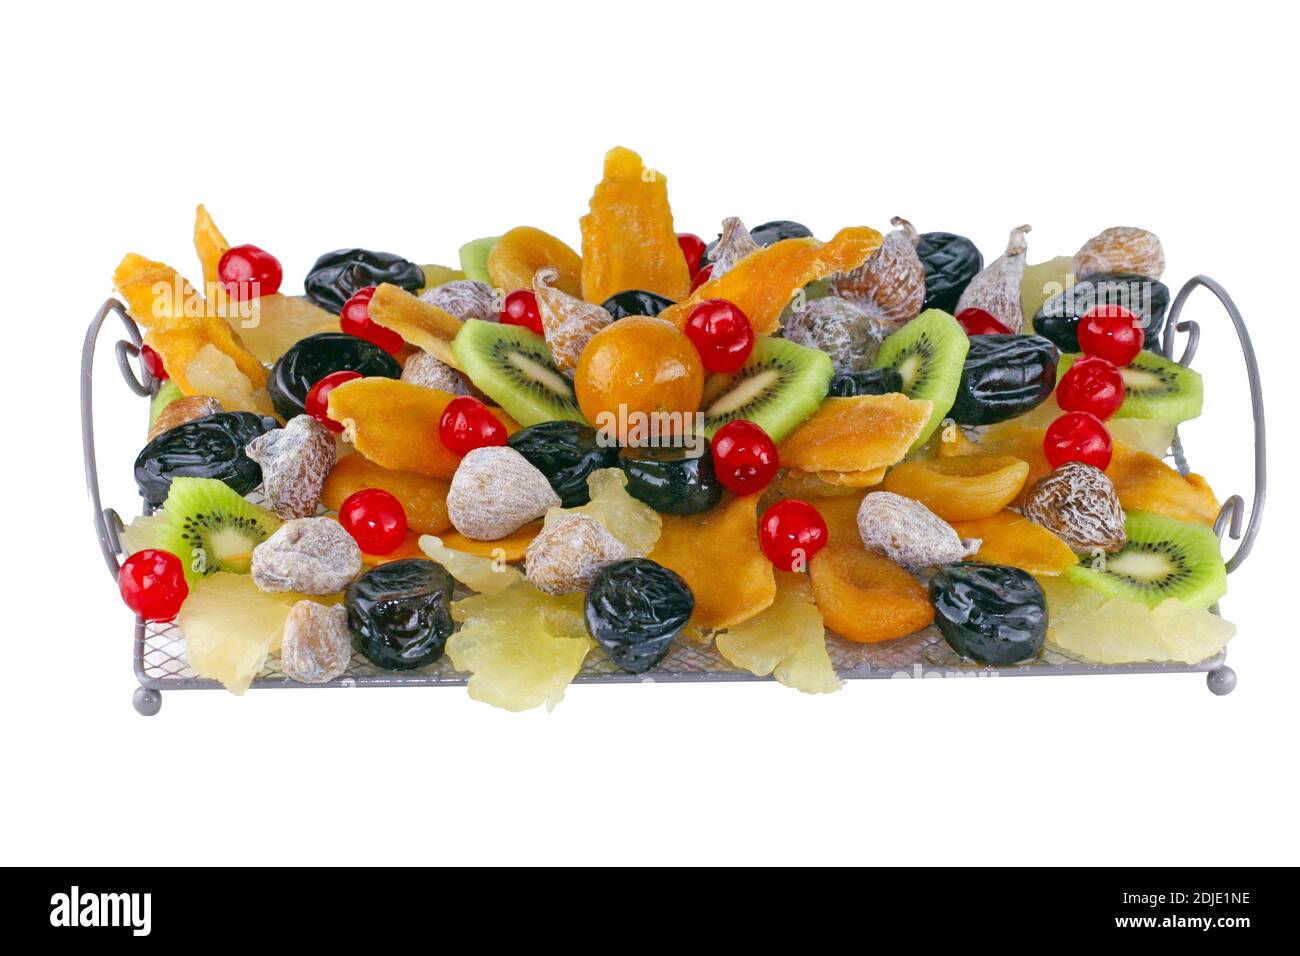 Eine Fotografie von getrockneten und kandierten Früchten auf weißem Hintergrund, um einen Presseartikel in Zeitschriften, Zeitungen Websites und anderen Werbebeilagen zu illustrieren. Stockfoto